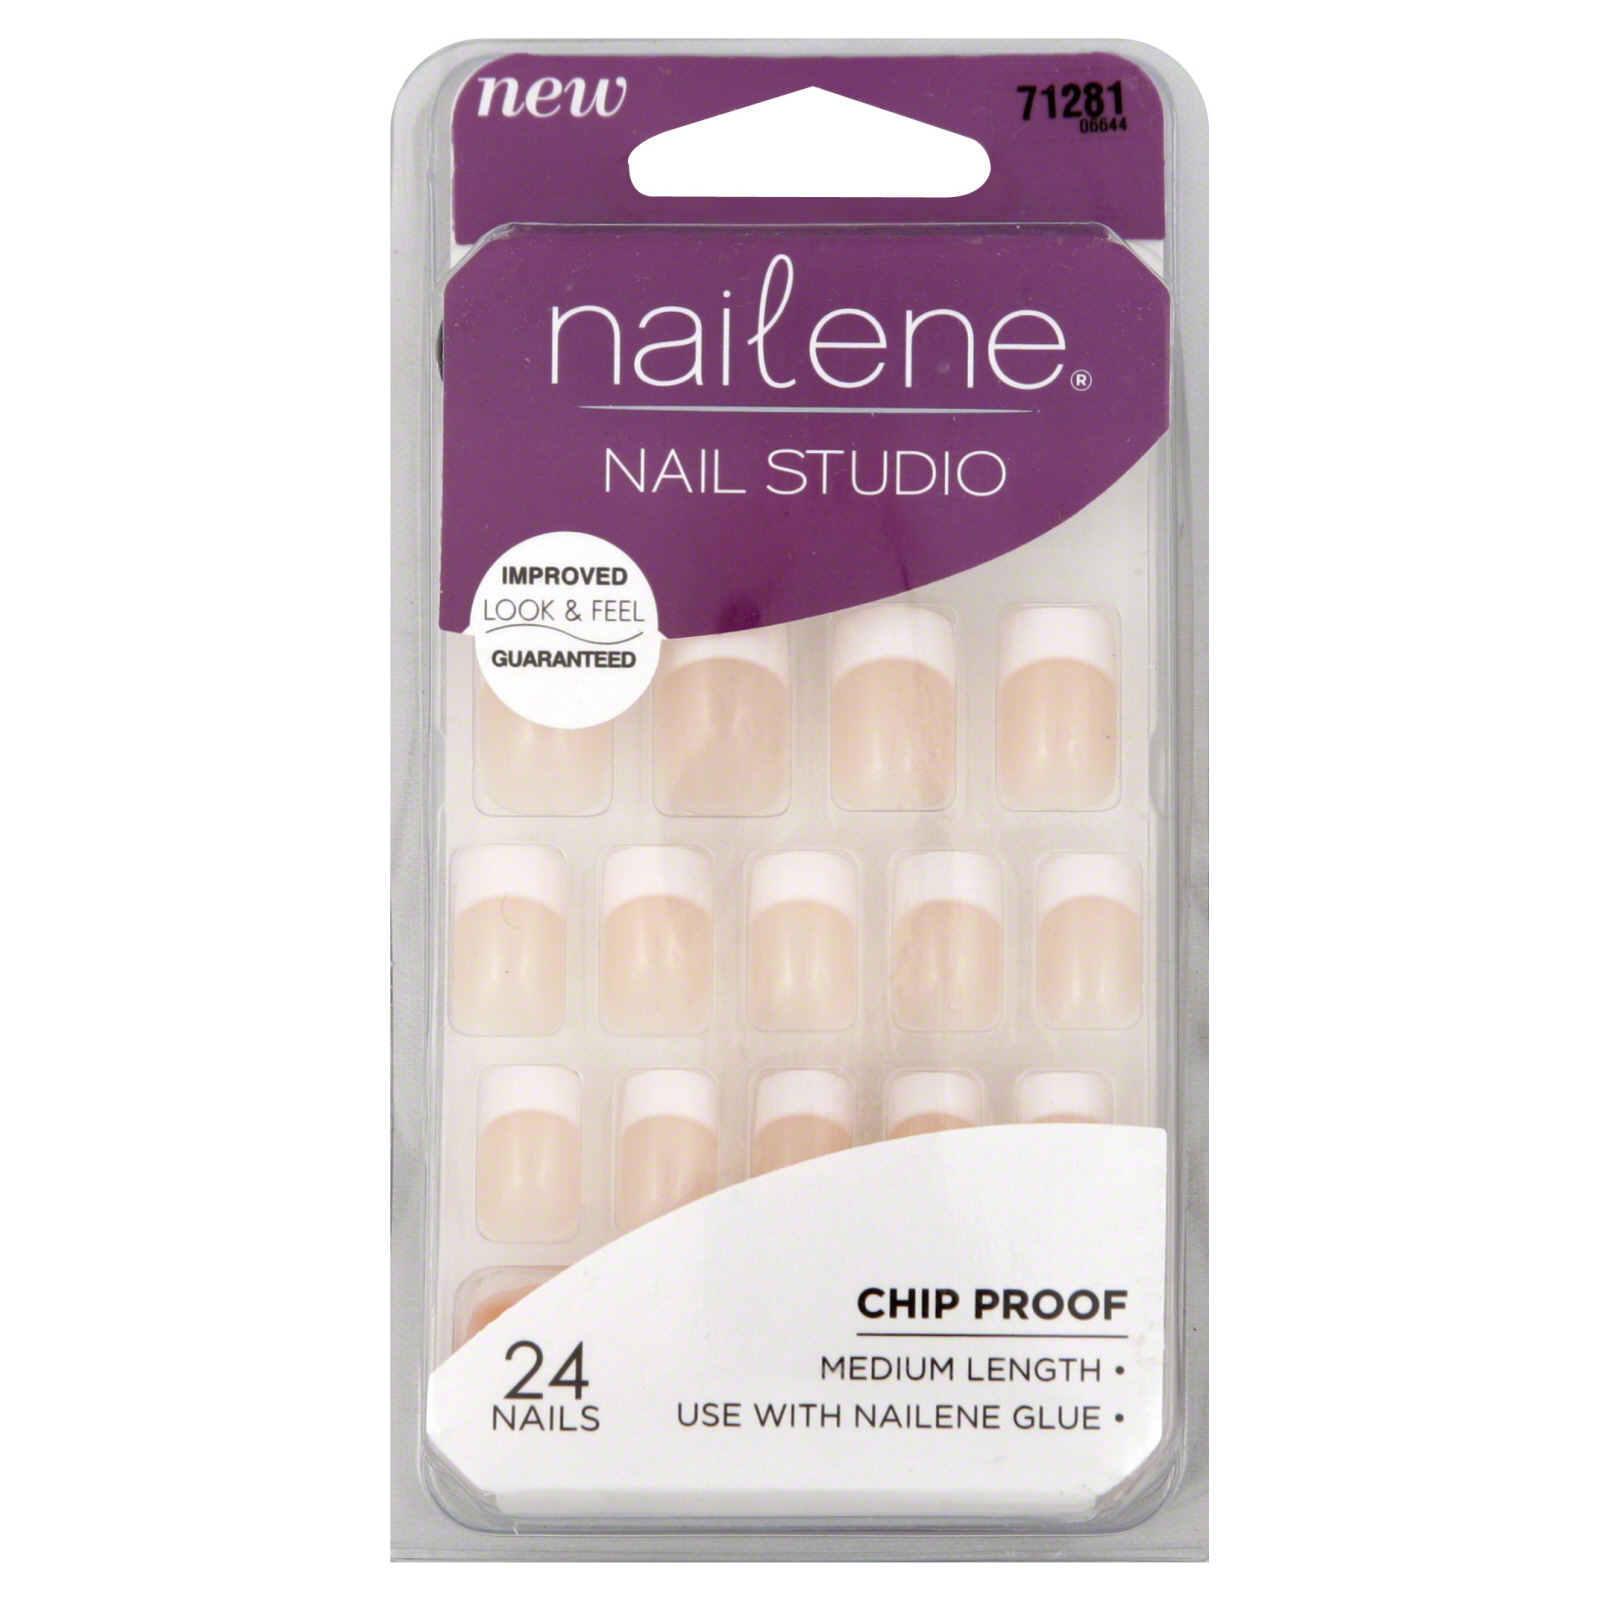 Nail Studio Nails, Medium Length, 24 nails